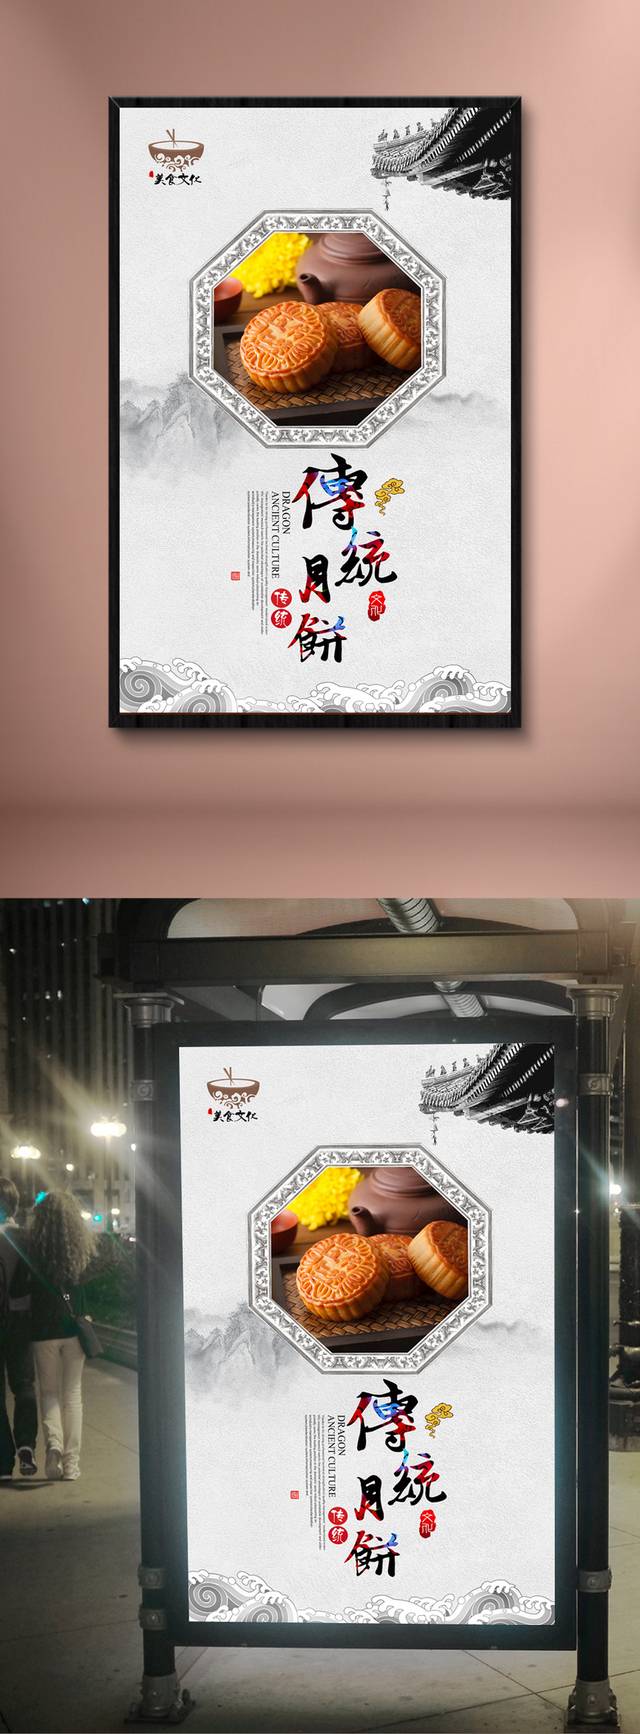 中国风复古月饼宣传海报设计